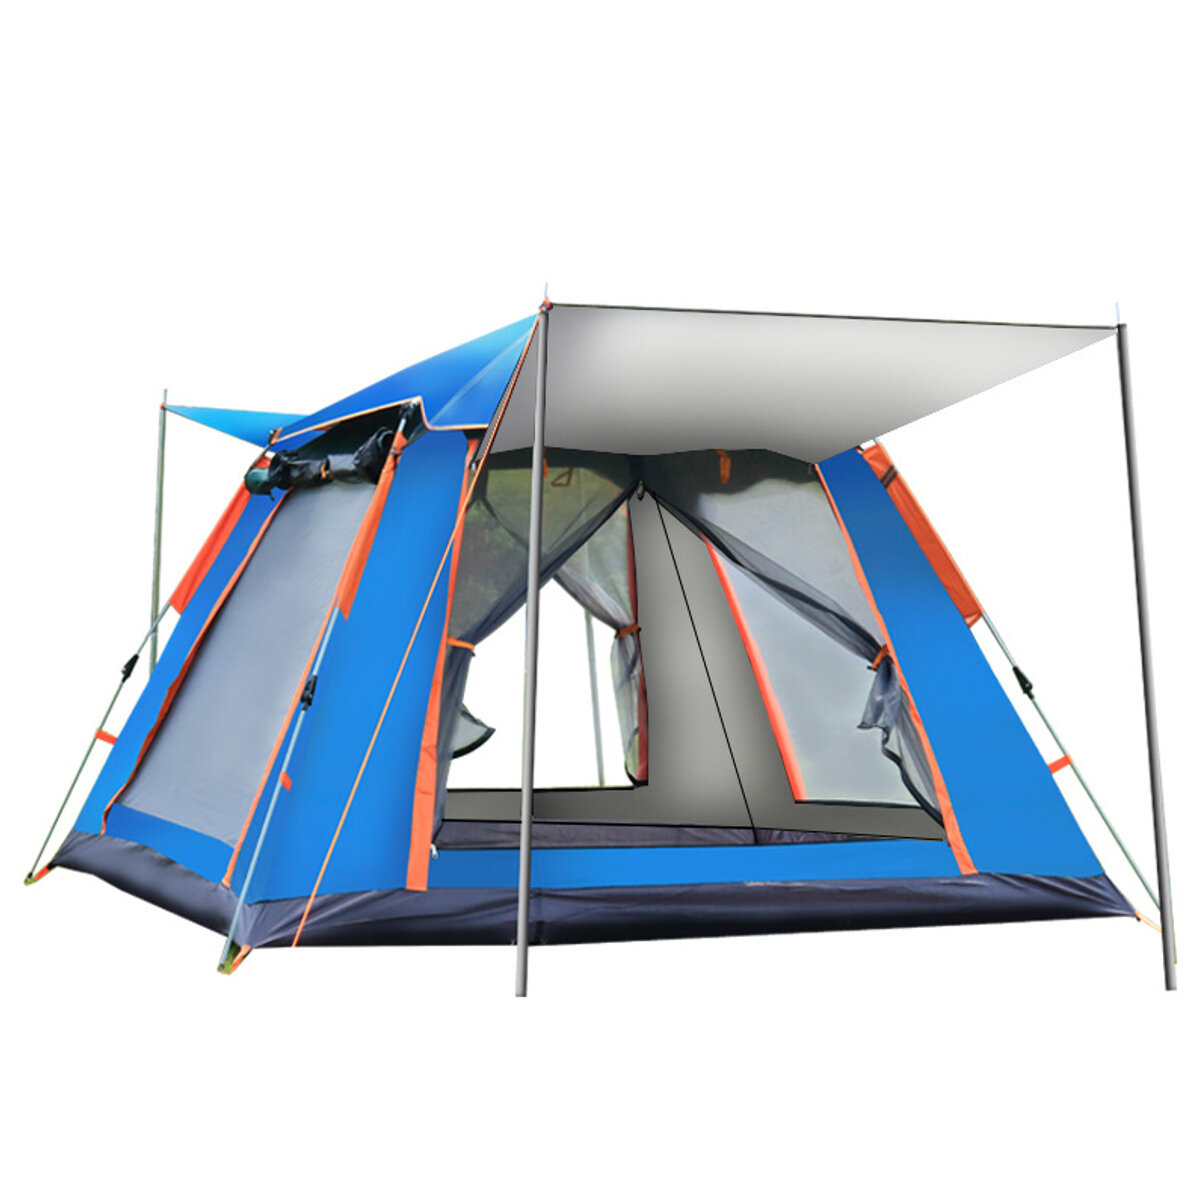 Tenda da viaggio completamente automatica per 4-5 persone UV Tende parasole da viaggio protette per picnic in famiglia Tende da esterno antipioggia antivento campeggio